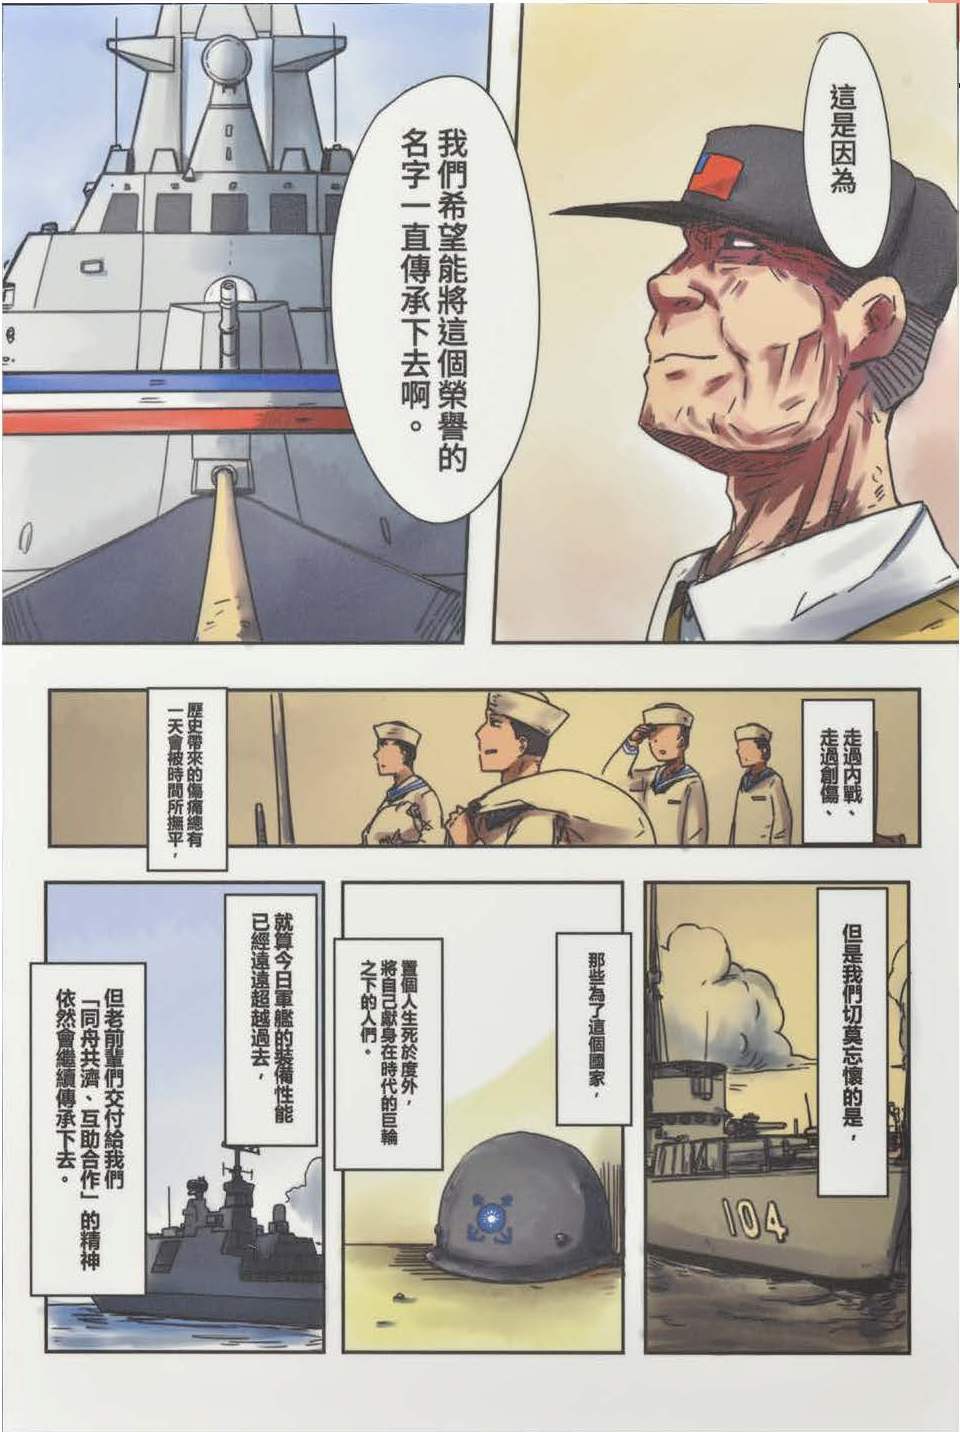 第50屆漫畫類金像獎作品_傳承11_張哲綱.jpg